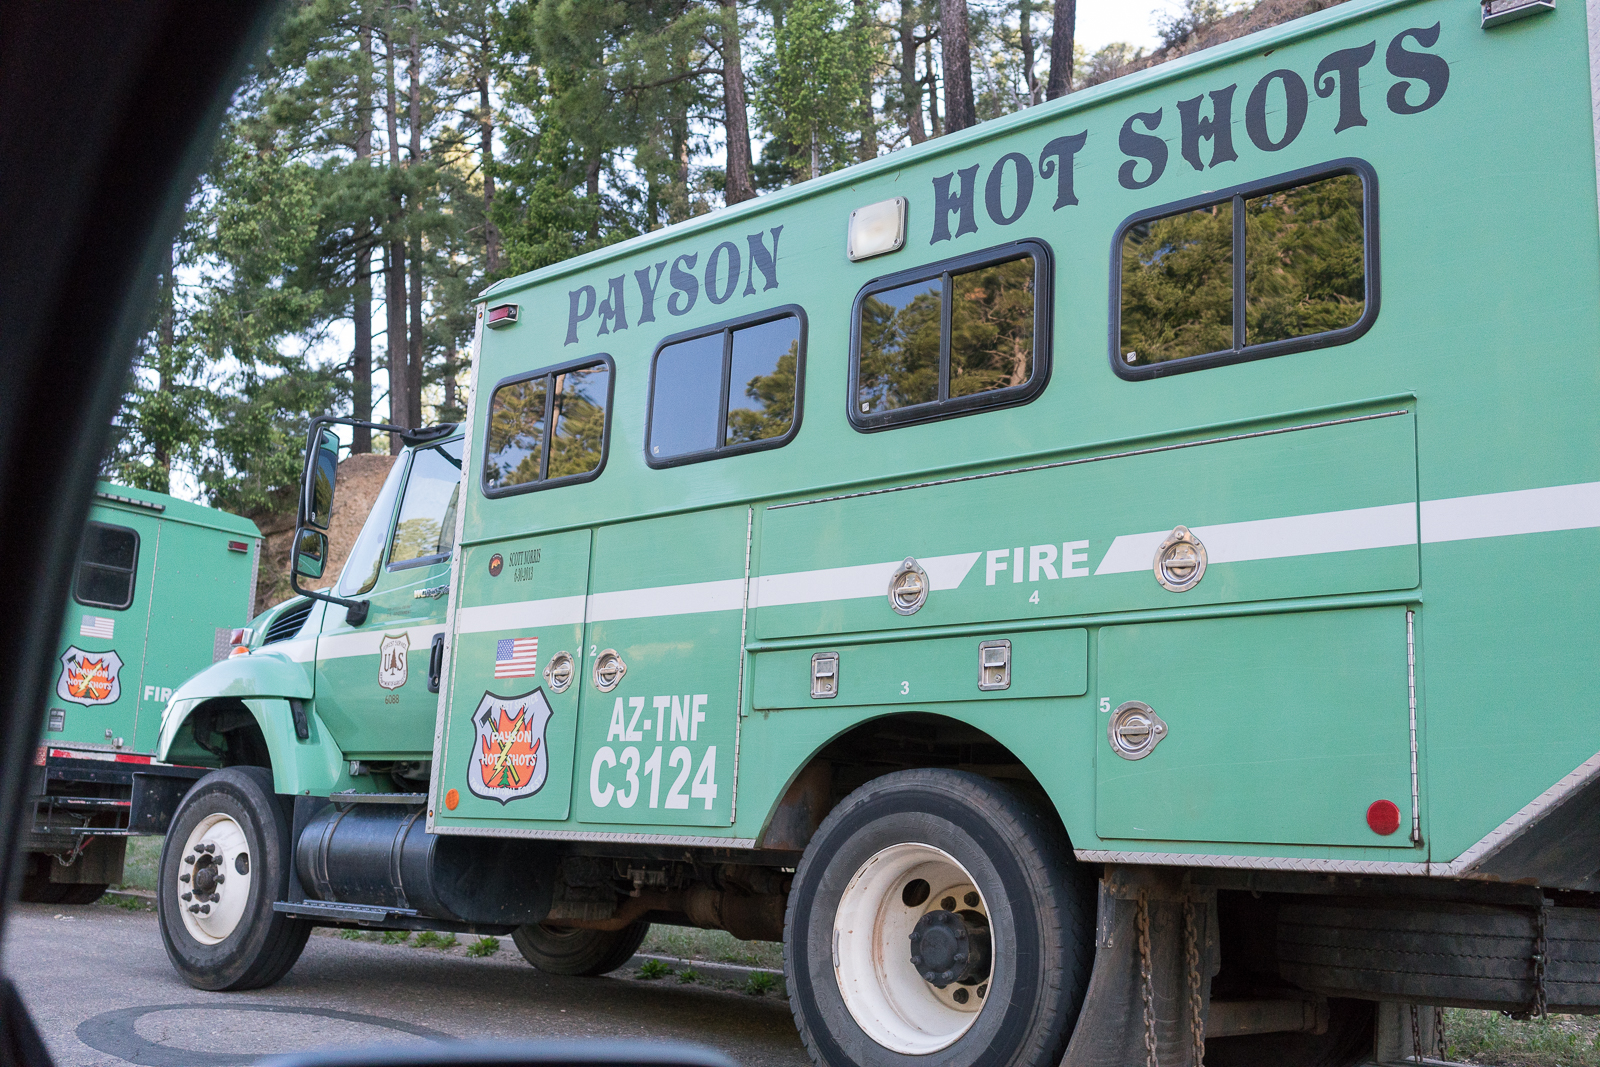 Payson Hot Shots vehicle at the Box Camp Trailhead. May 2016.